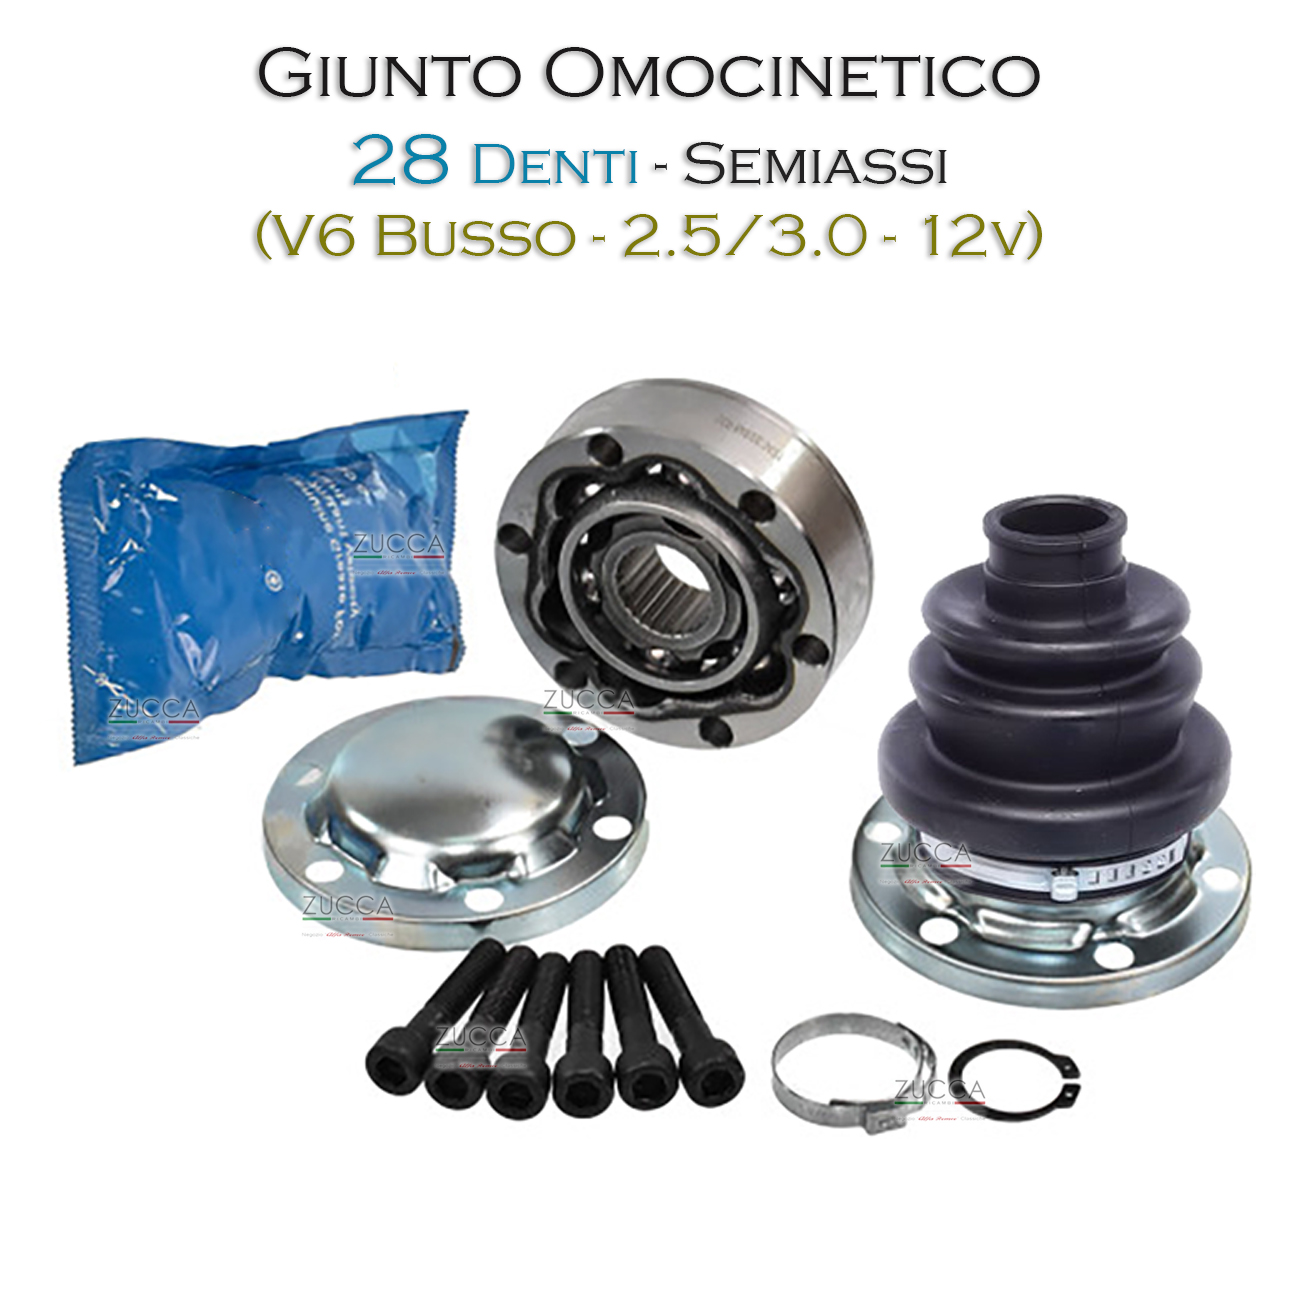 Giunto Omocinetico (116/162 – V6 Busso/Turbo/T.Spark)